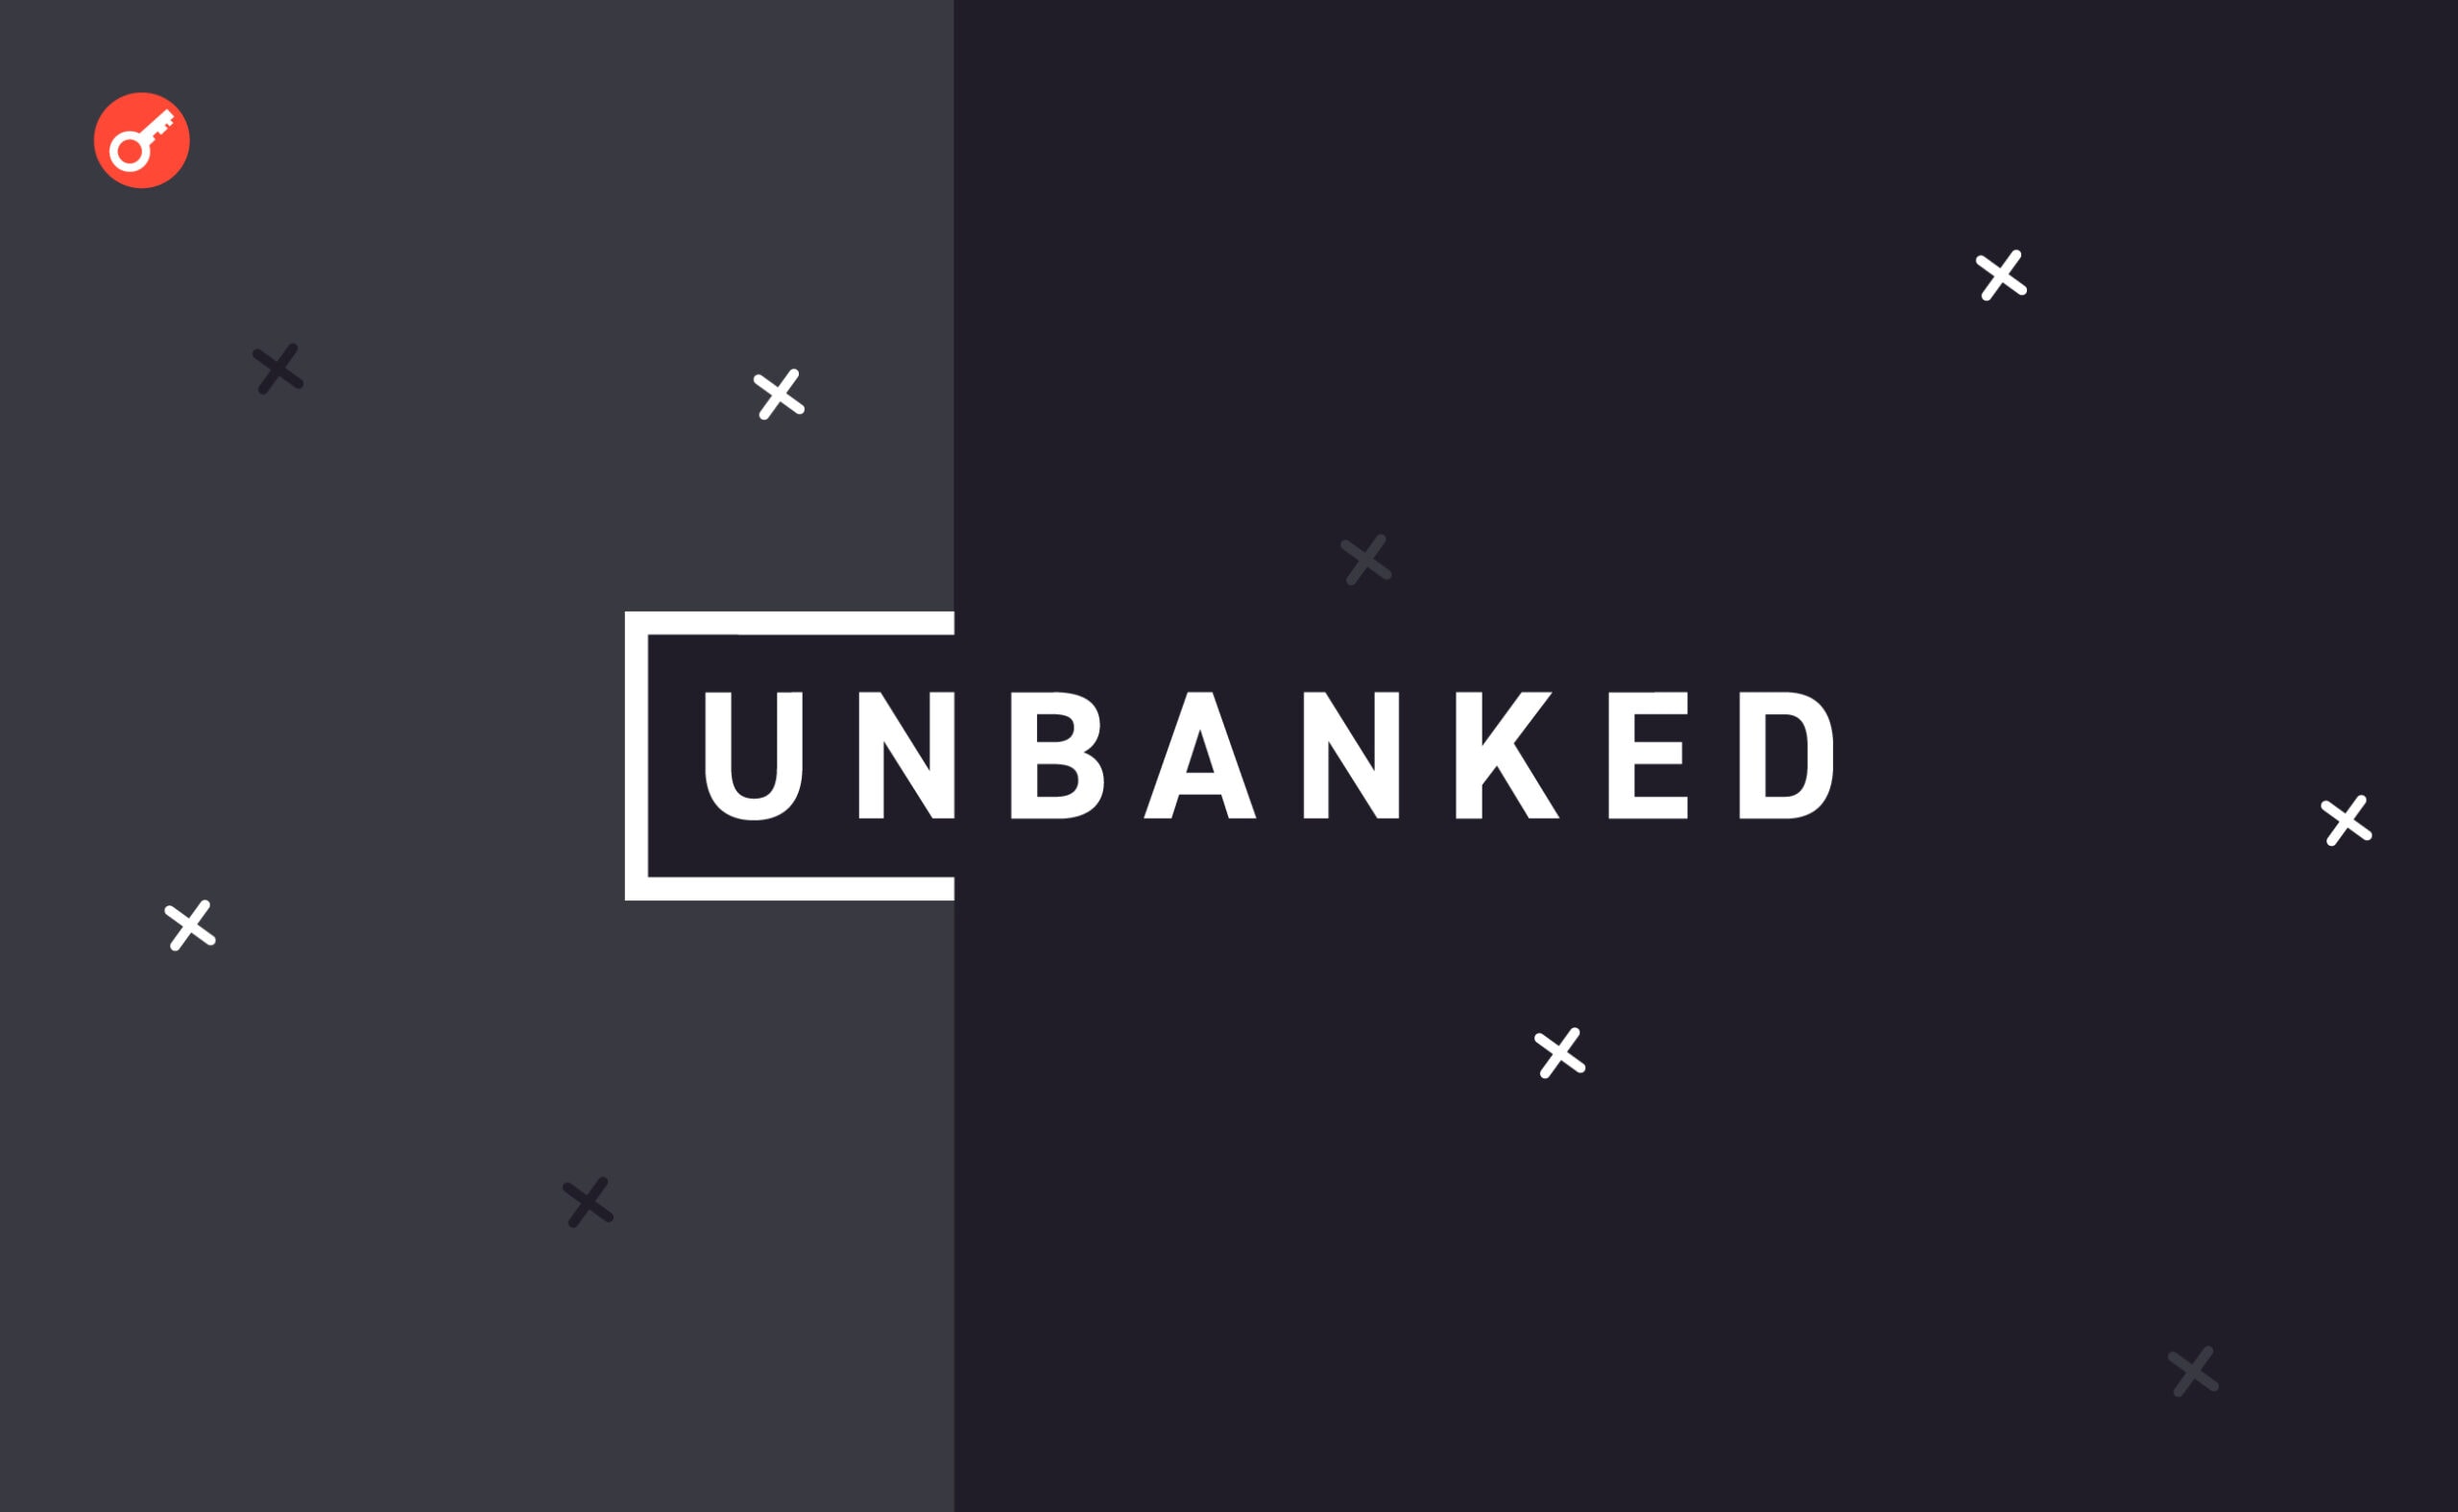 Криптофірма Unbanked закривається через дії регулятора. Головний колаж новини.